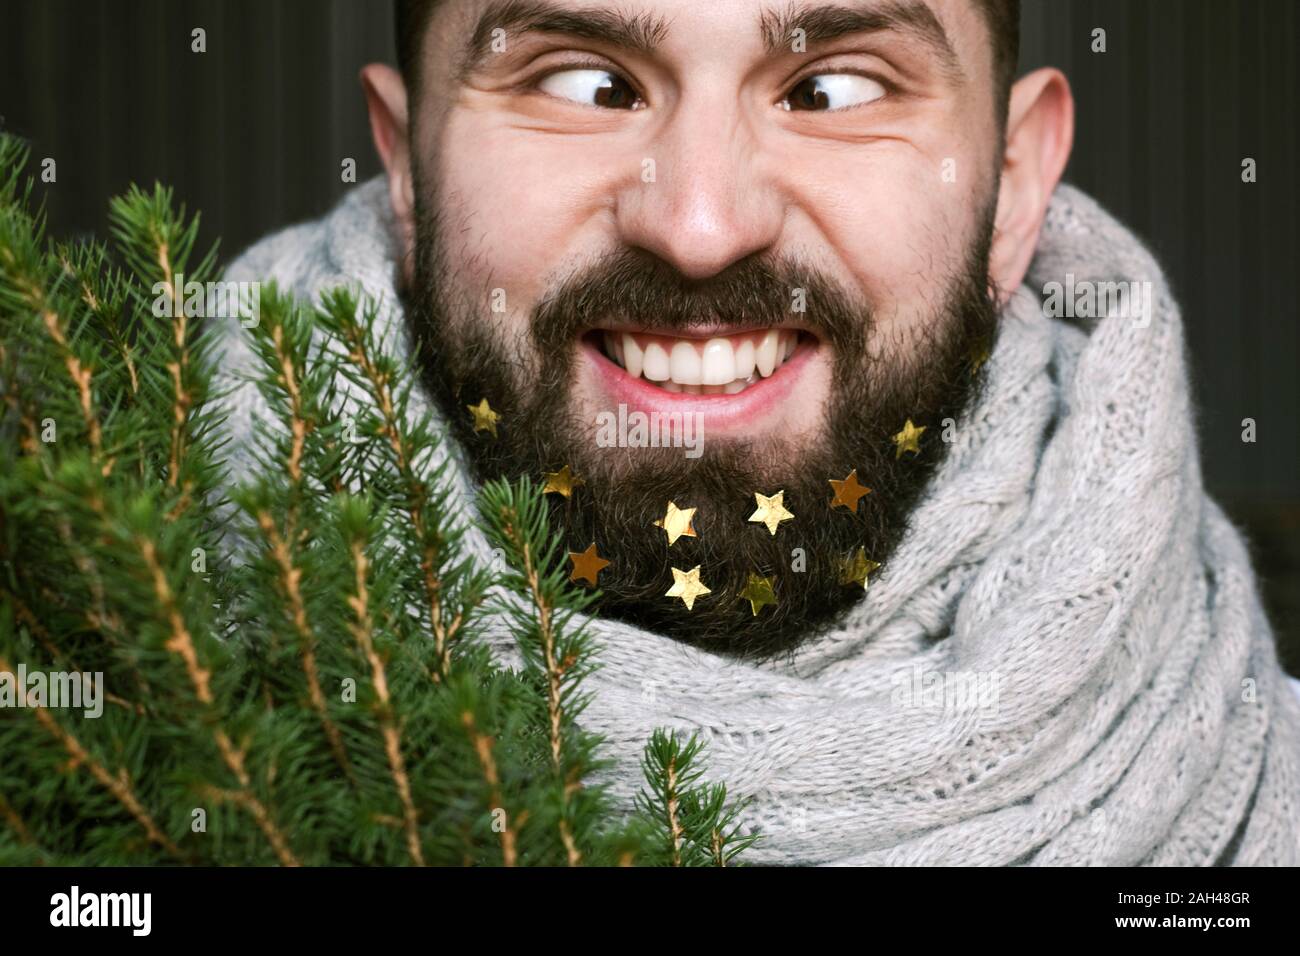 Lustiger Mann mit Weihnachtsbaum und Goldene Sterne in seinen Bart Stockfoto